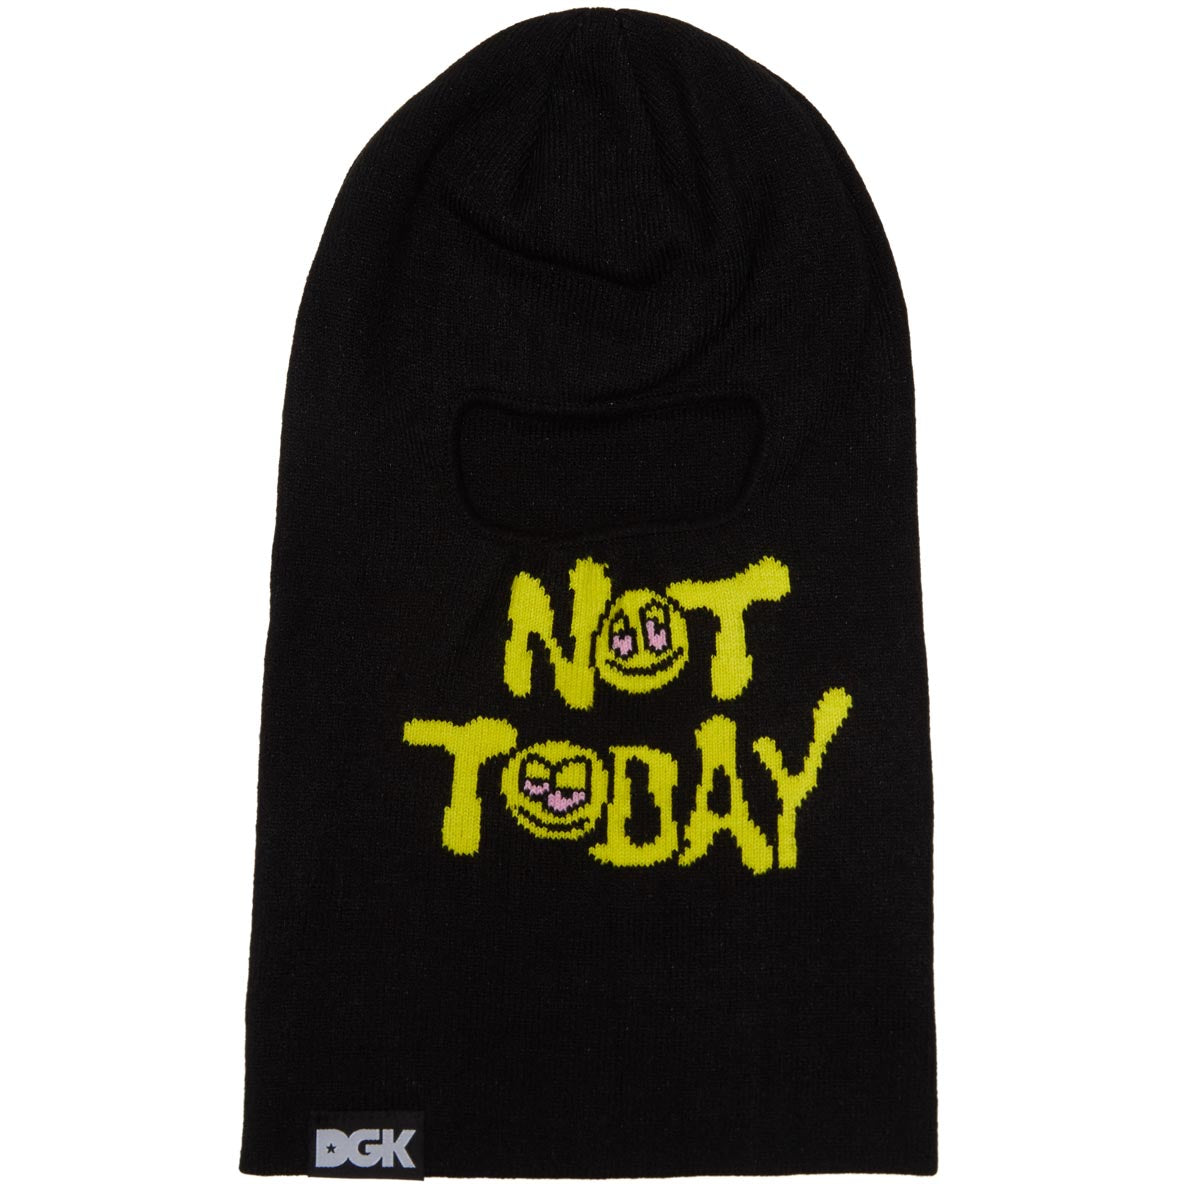 DGK Not Today Ski Mask Beanie - Black image 1